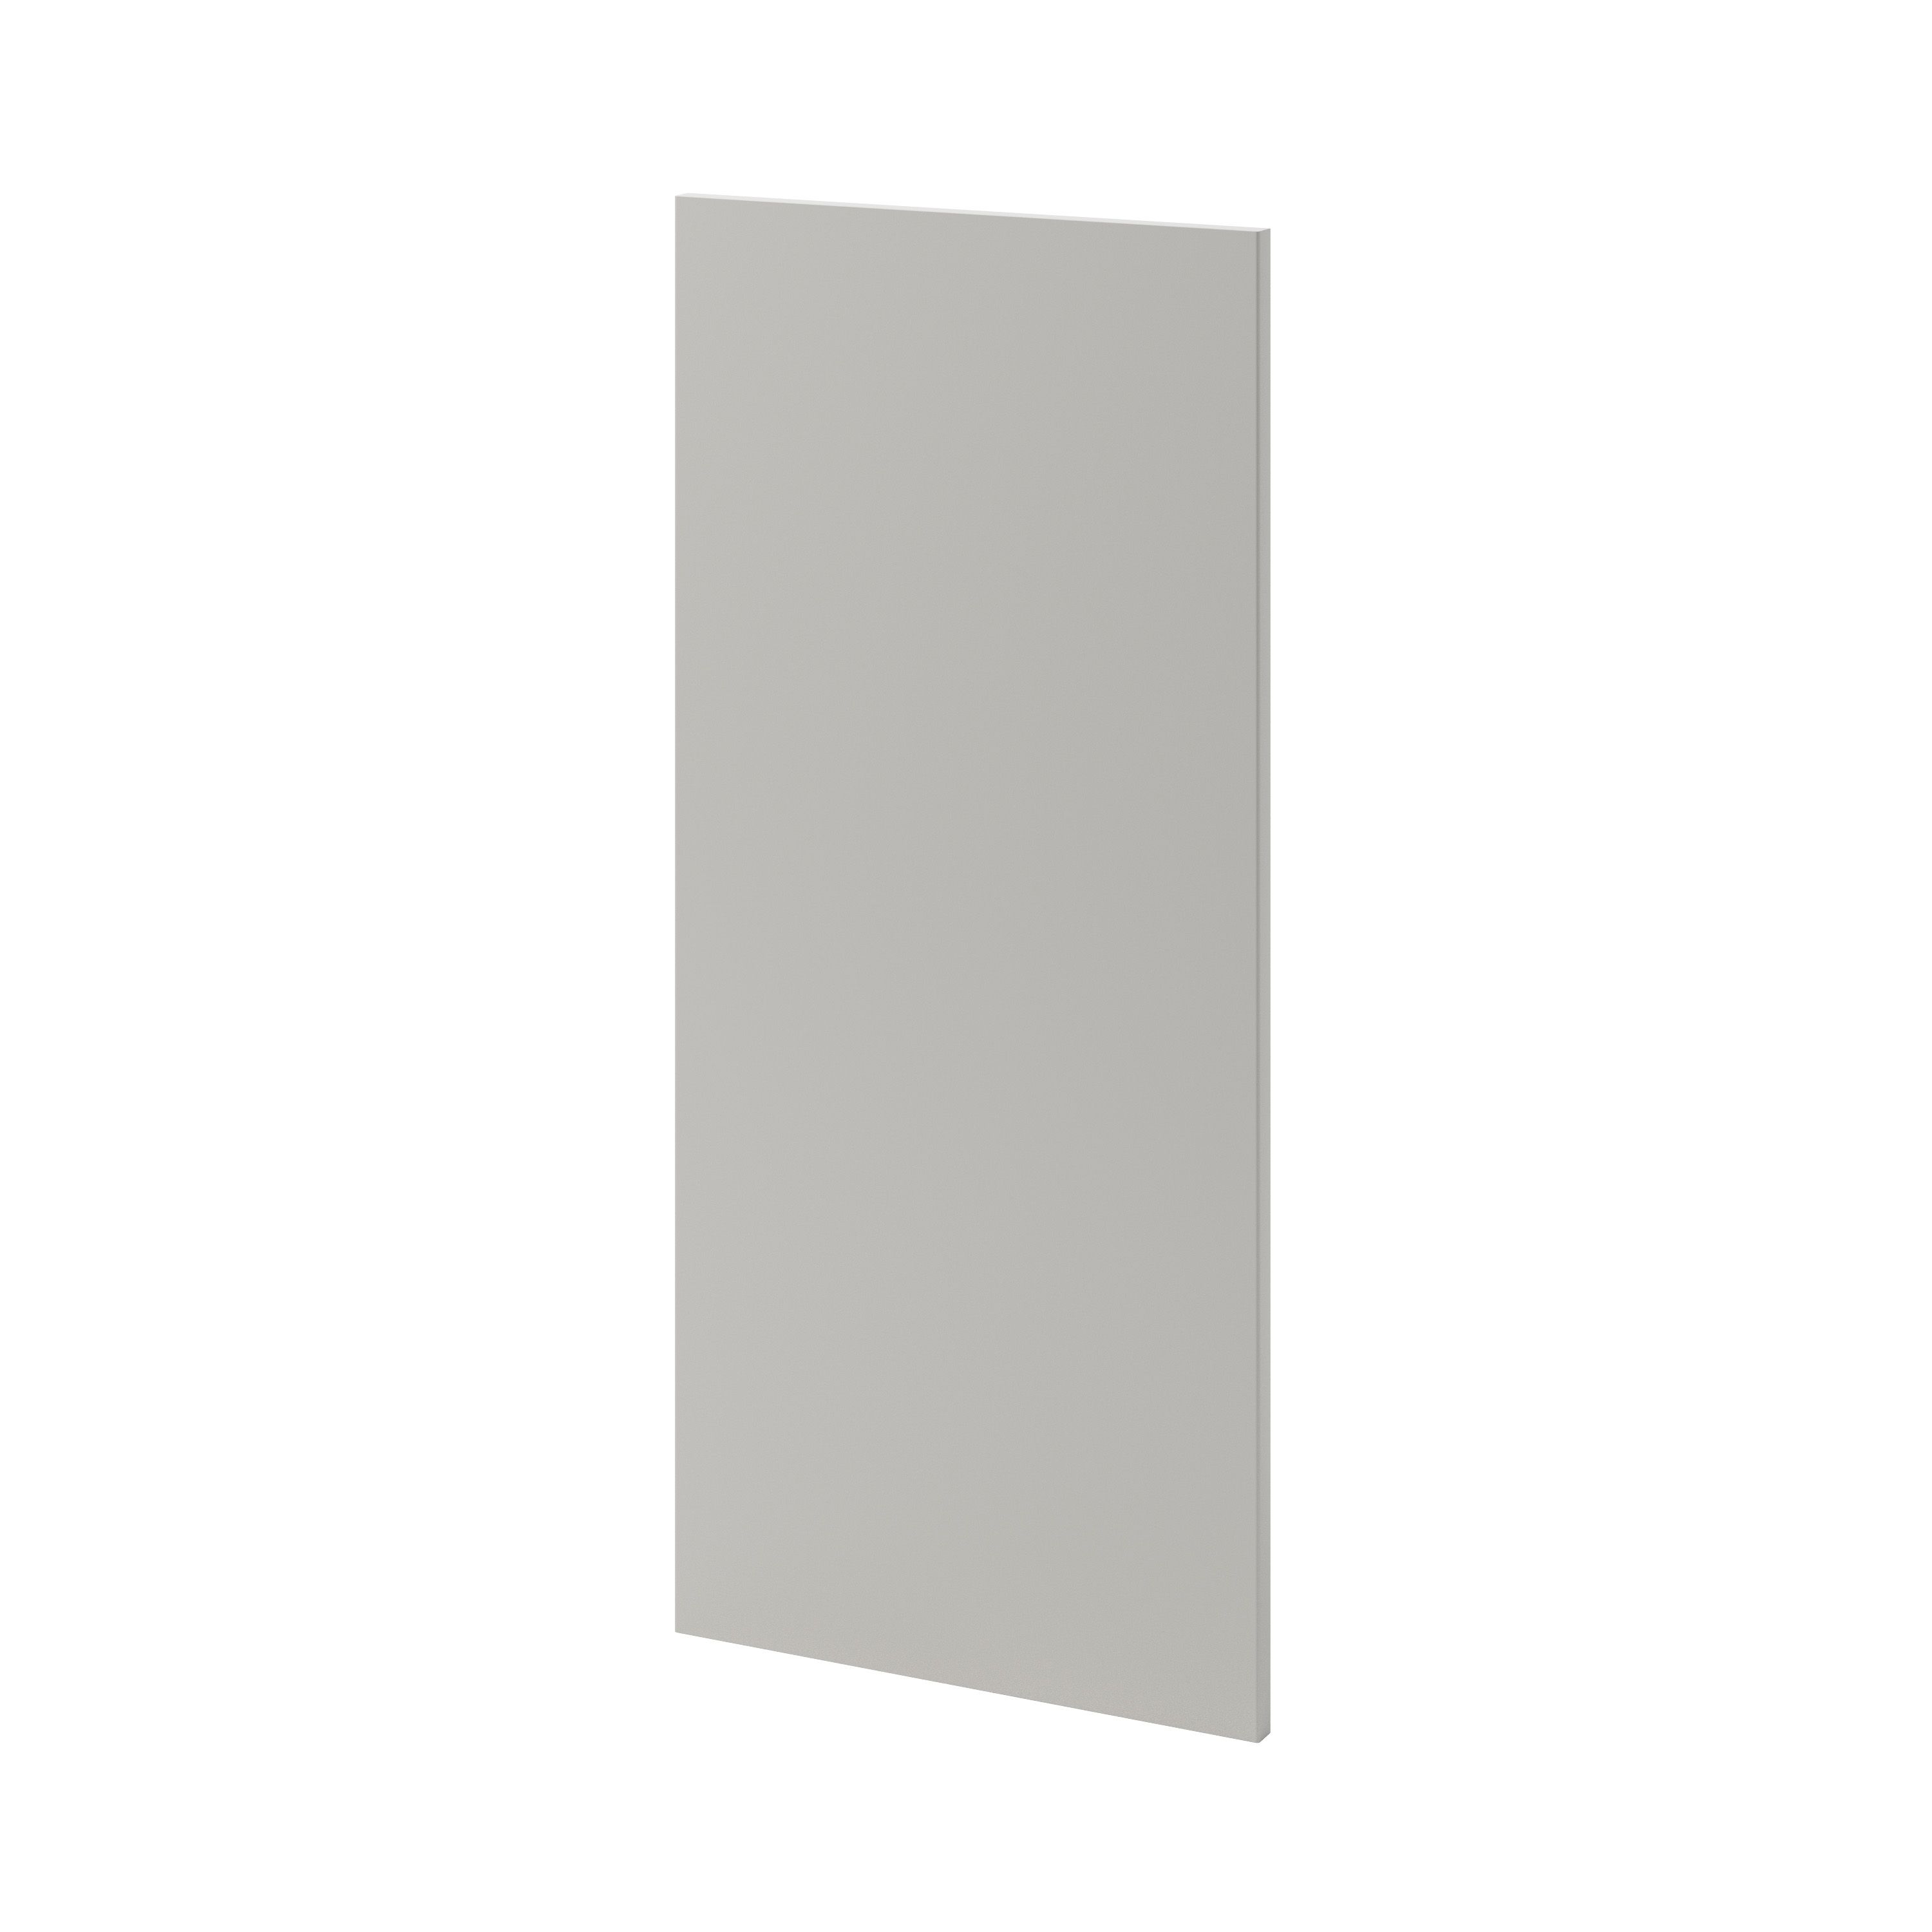 GoodHome Stevia Matt Pewter grey slab Tall wall Cabinet door (W)400mm (H)895mm (T)18mm